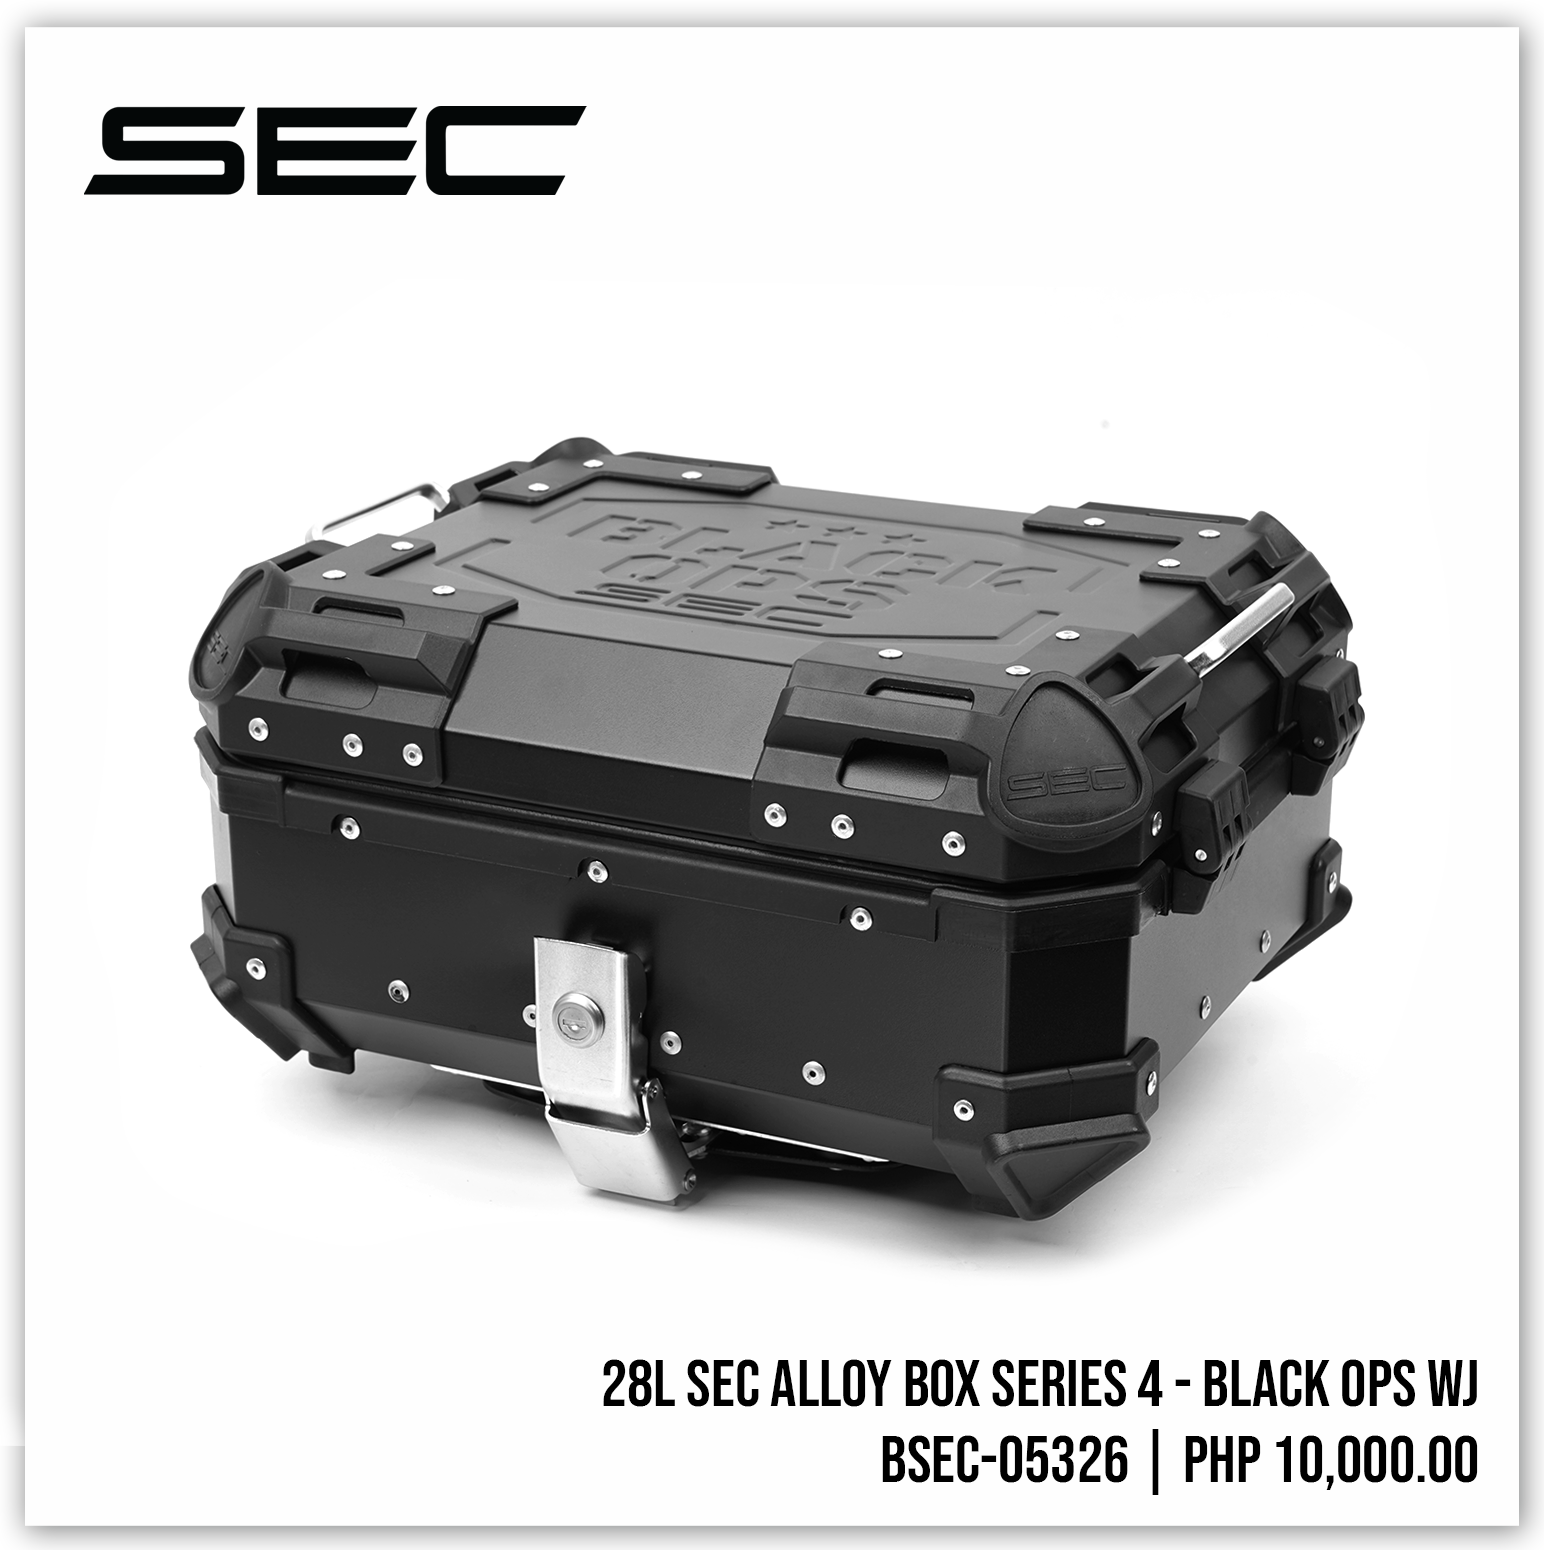 28L SEC Alloy Box Series 4 - Black Ops WJ